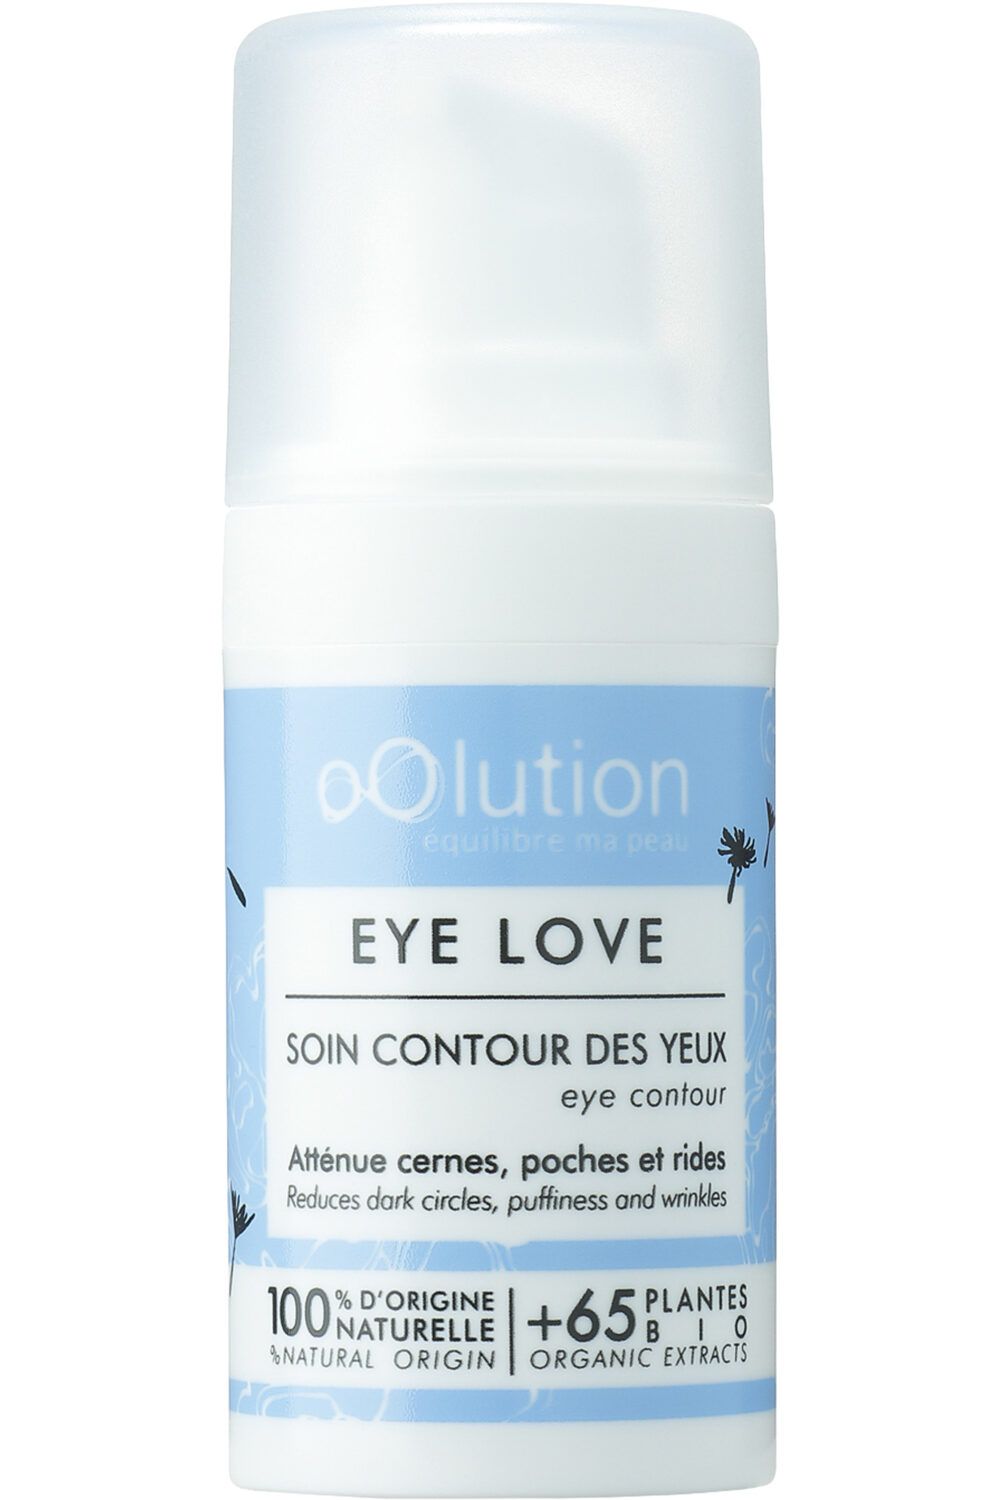 Oolution - eye love